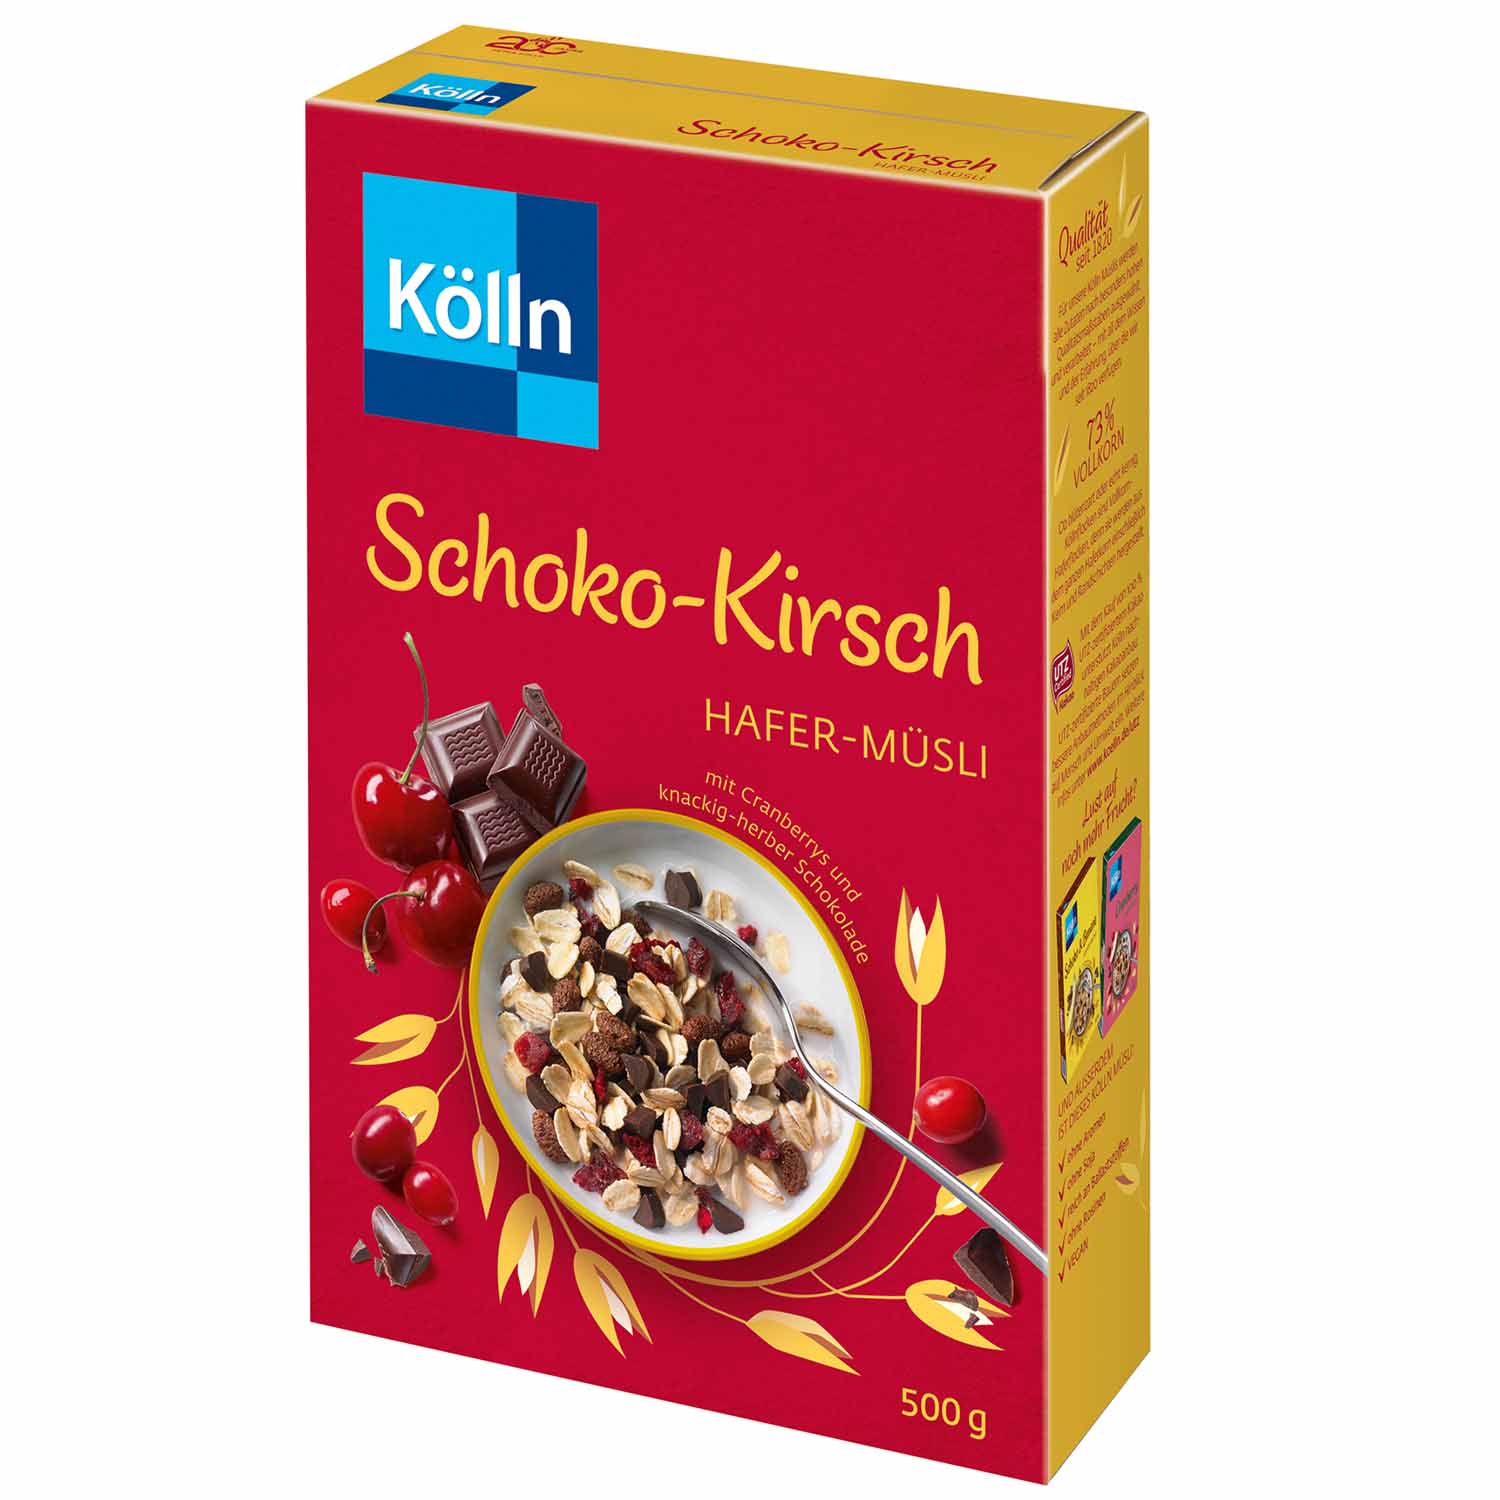 Kölln Hafer-Müsli Schoko-Kirsch 500g | Online kaufen im World of Sweets ...